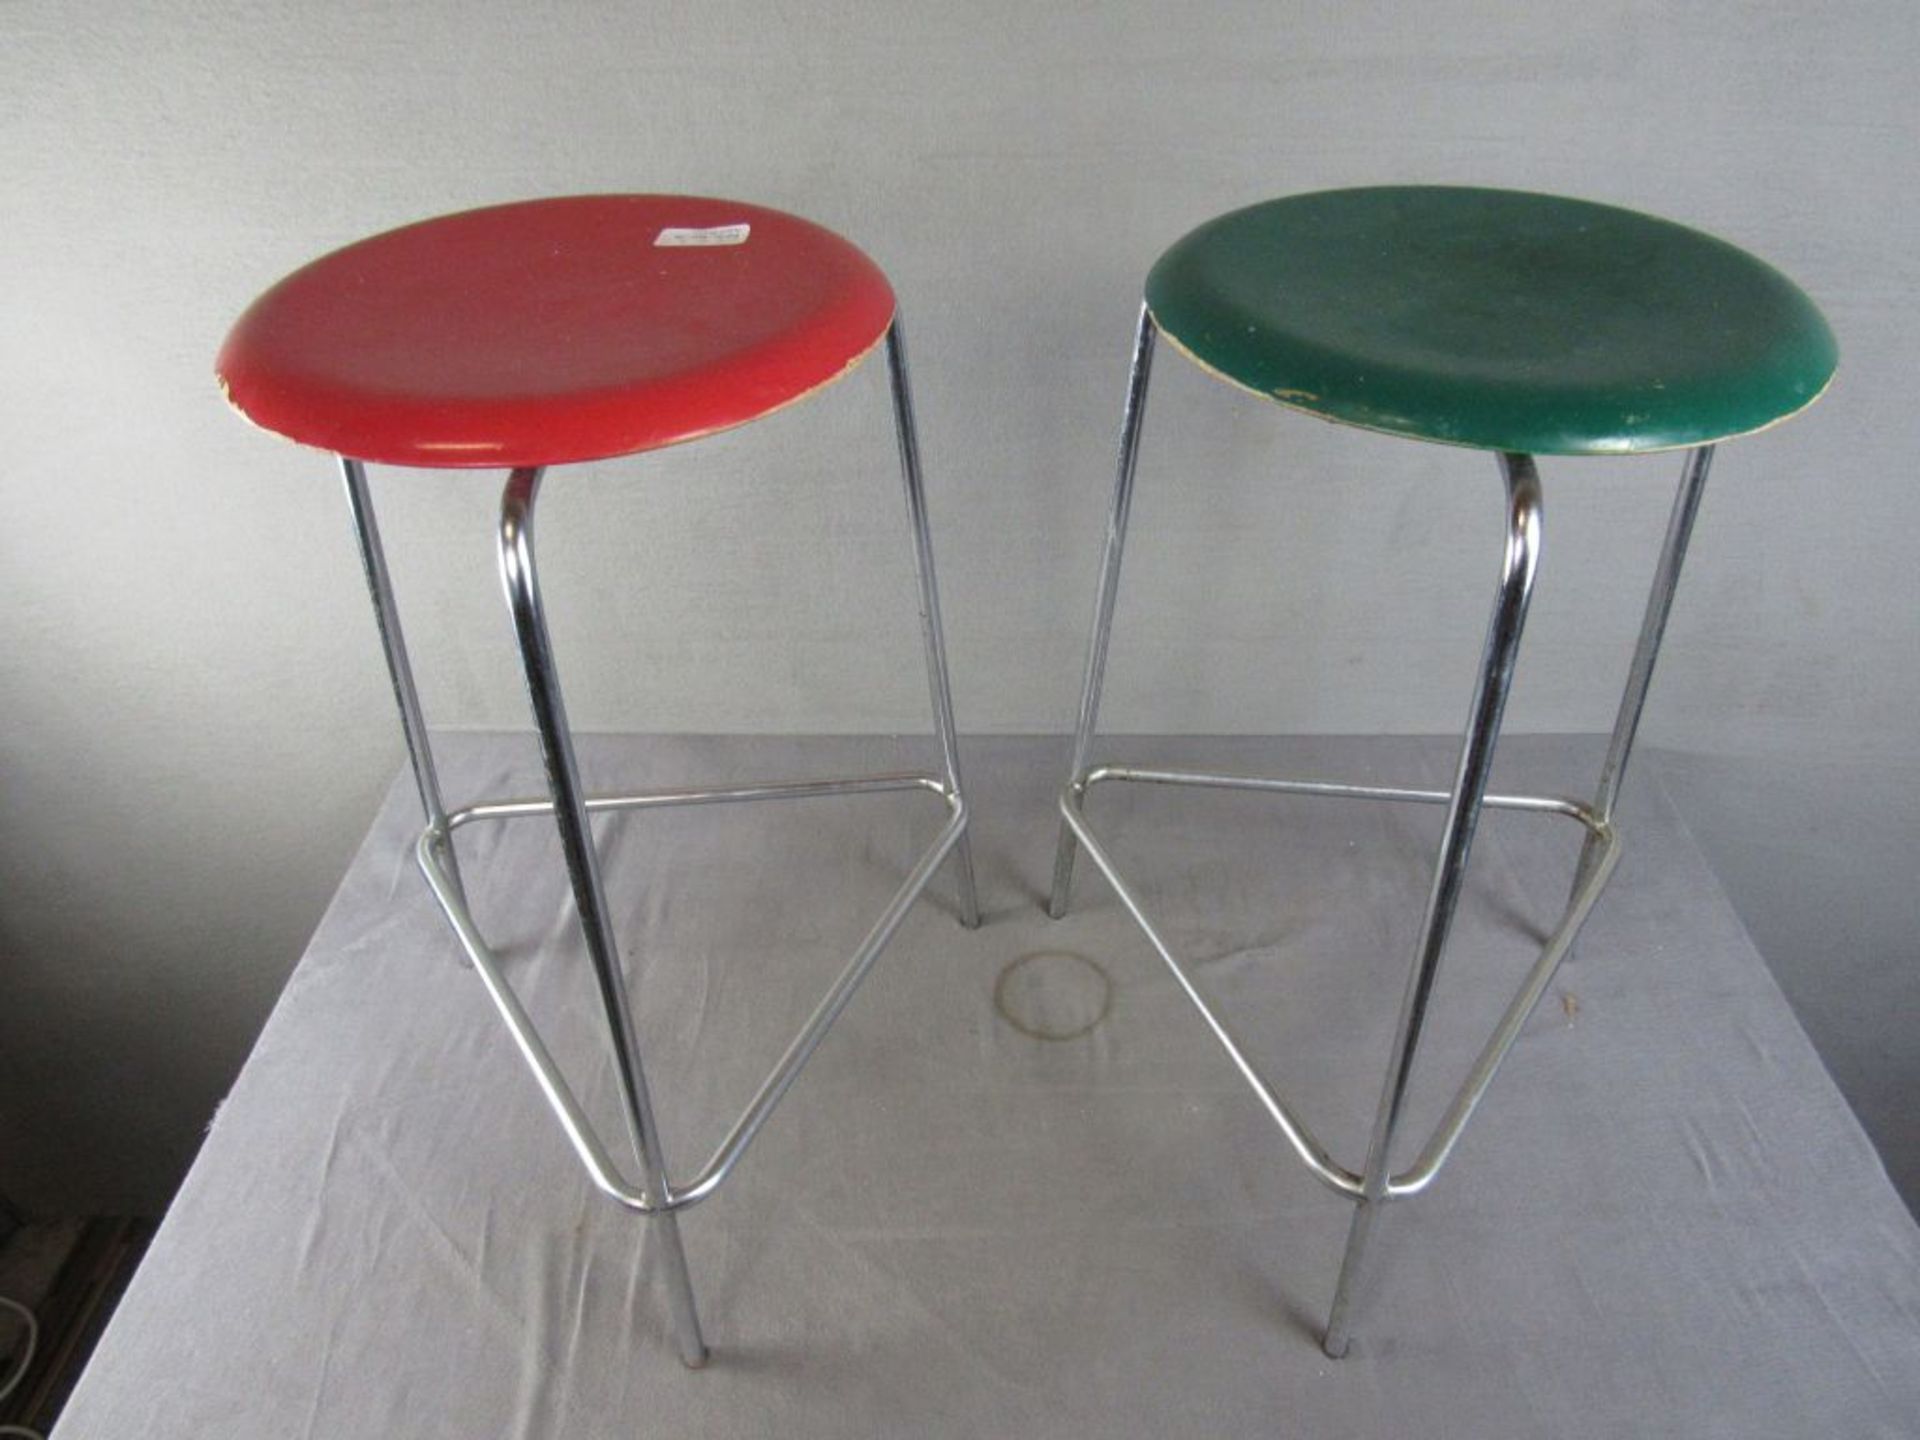 Vintage 60er Jahre zwei Hocker Stühle Made in Denmark Design by Arne Jacobsen 1x mit Furnierschade - Image 2 of 6